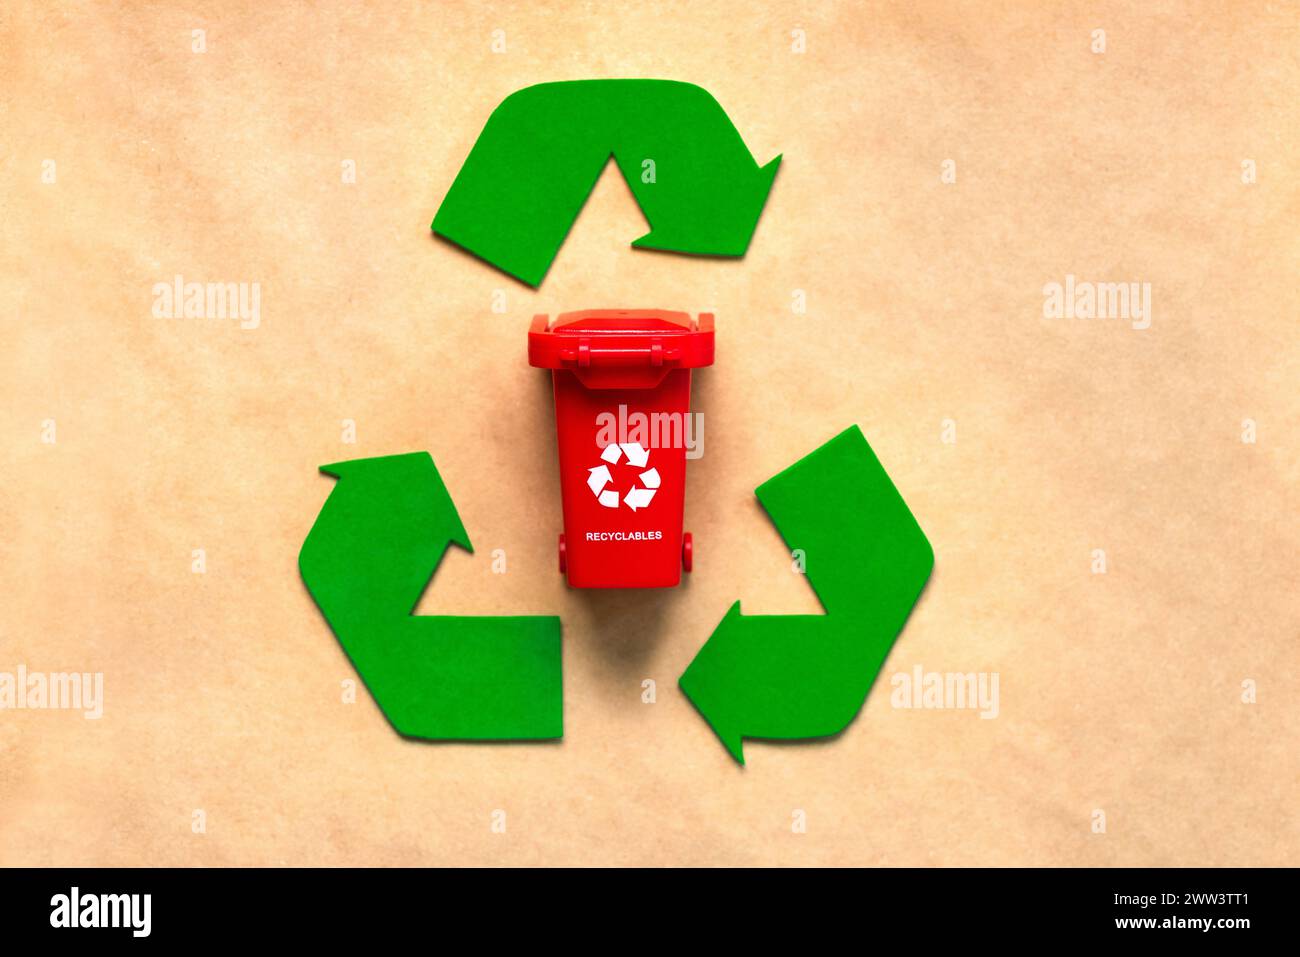 Vista dall'alto del simbolo di riciclaggio con cestino rosso su sfondo di carta riciclata. Concetto di riciclaggio ecologico Foto Stock